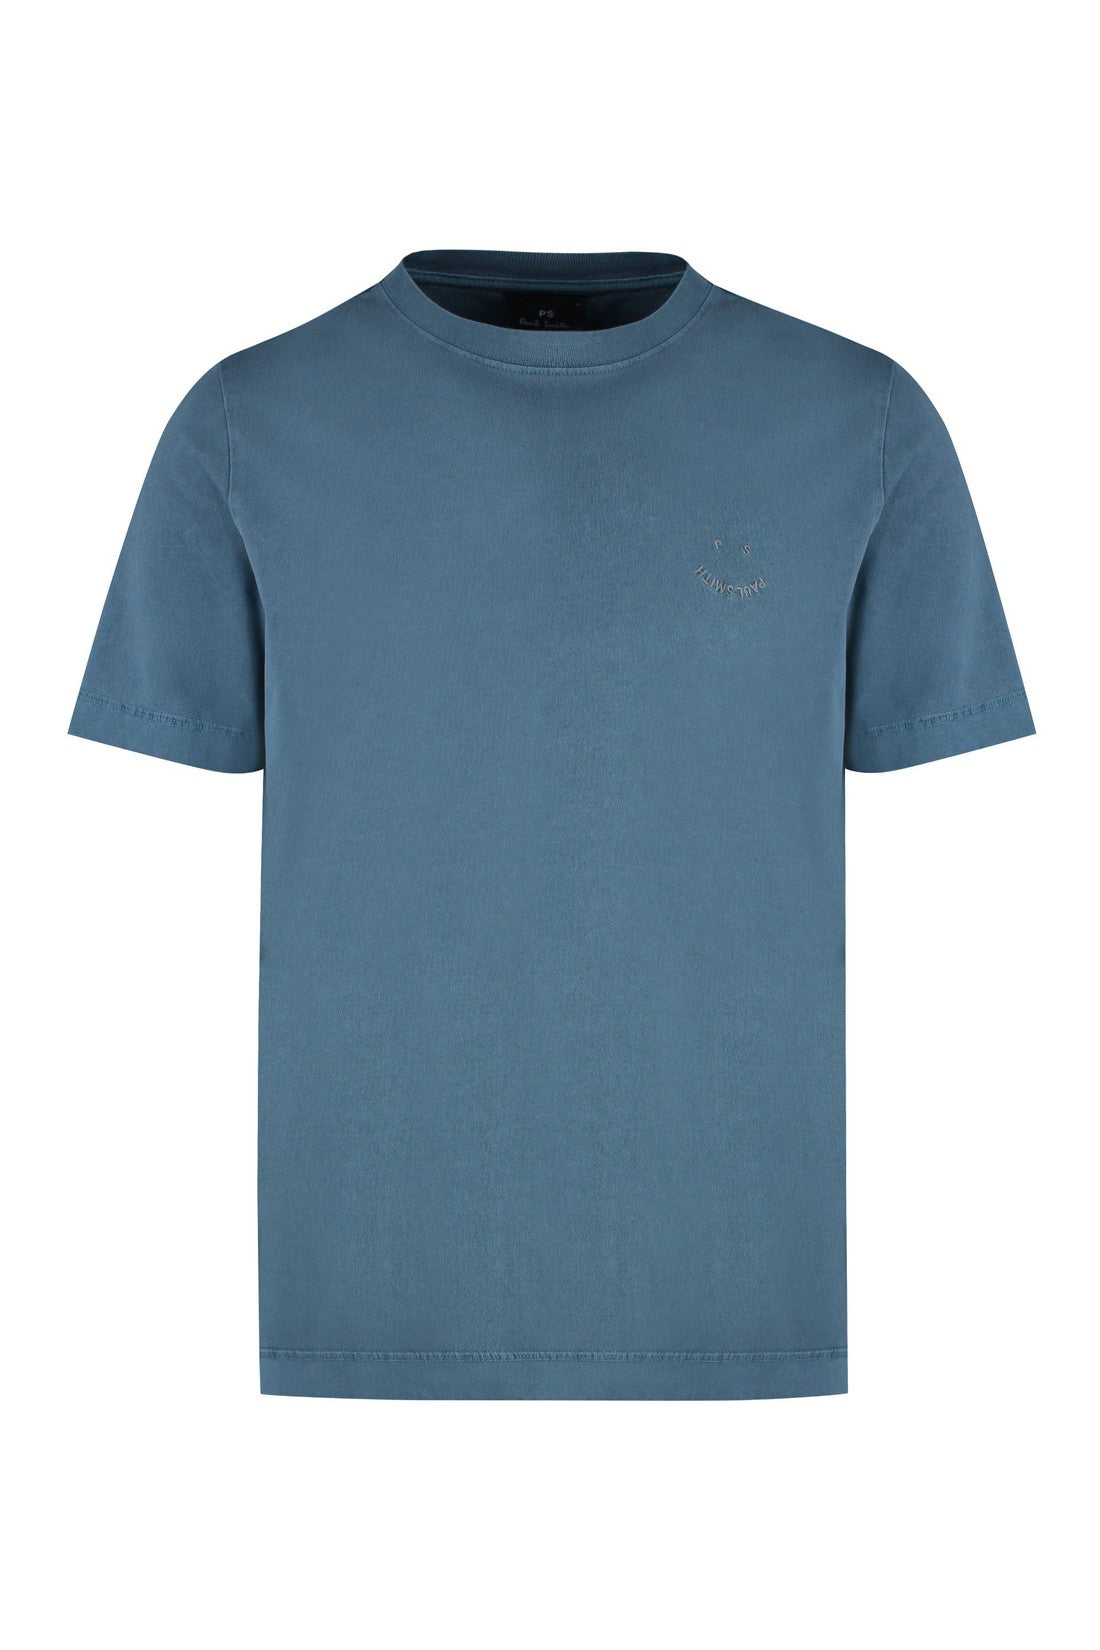 Paul Smith-OUTLET-SALE-Cotton crew-neck T-shirt-ARCHIVIST